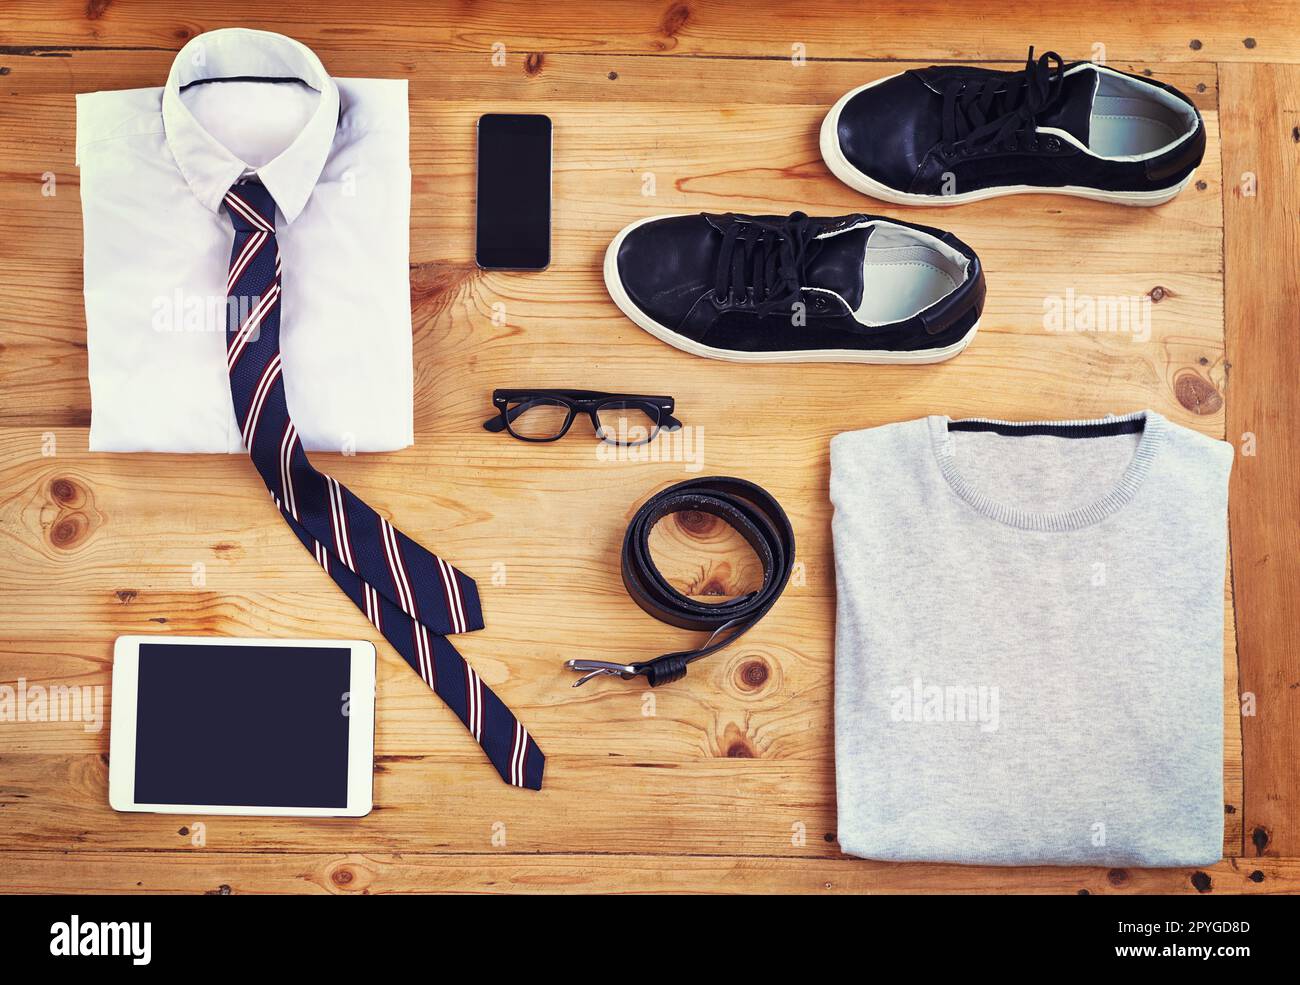 Kit für den modernen Mann. Ein elegantes und legeres Outfit mit digitalen Geräten aus einem hohen Winkel auf einem Holztisch. Stockfoto